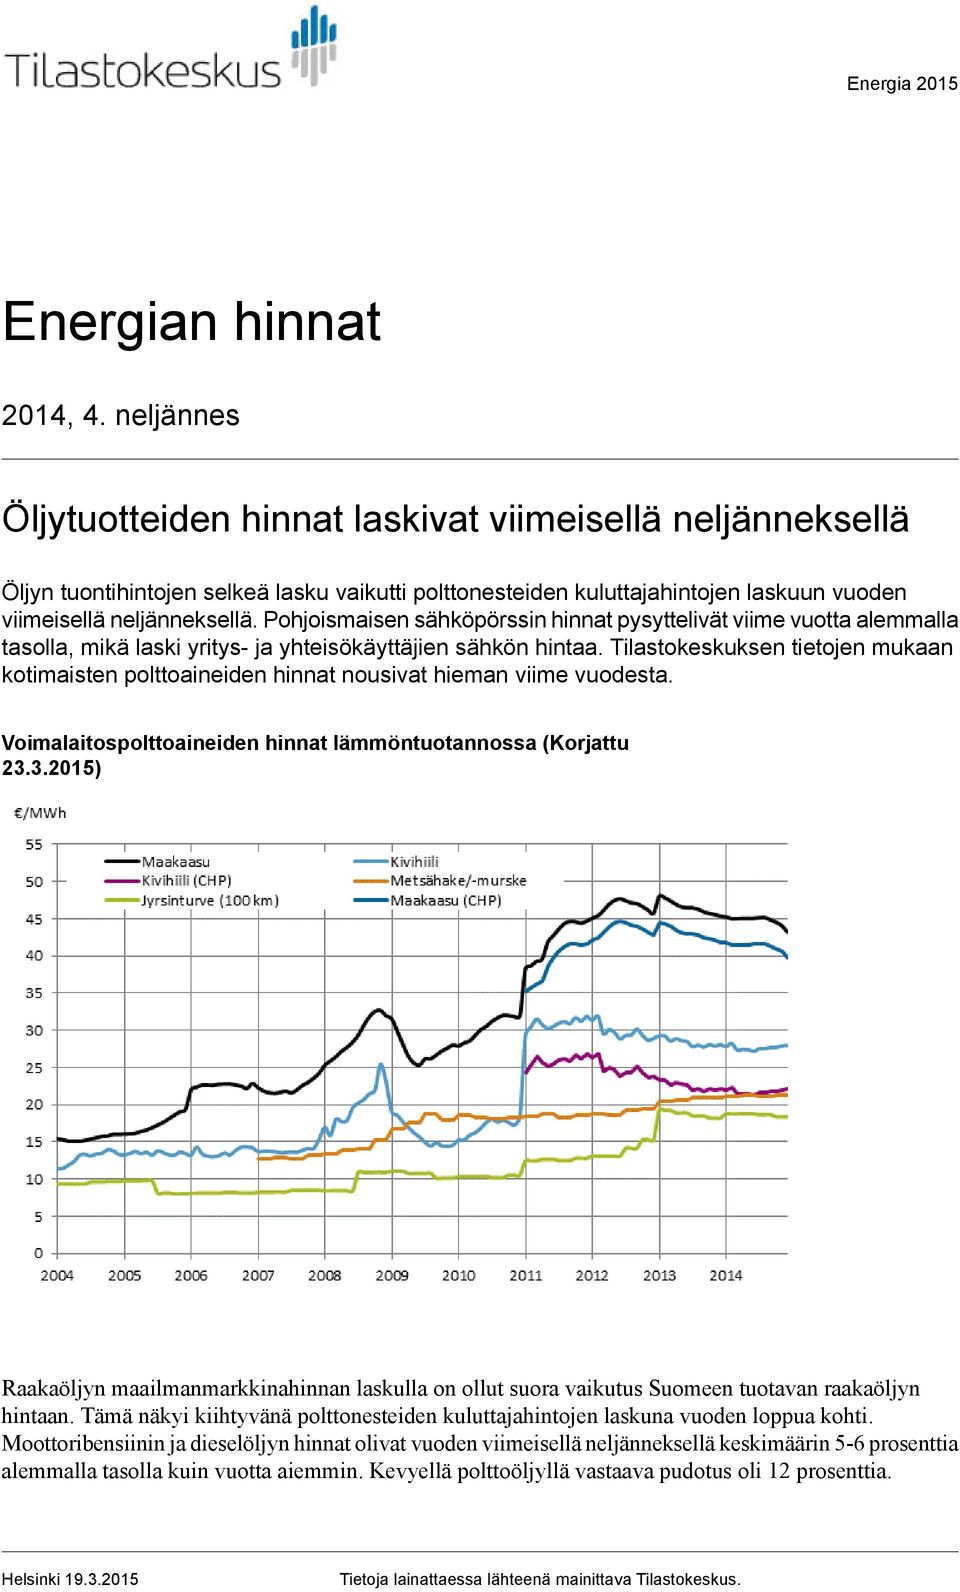 Pohjoismaisen sähköpörssin hinnat pysyttelivät viime vuotta alemmalla tasolla, mikä laski yritys ja yhteisökäyttäjien sähkön hintaa.